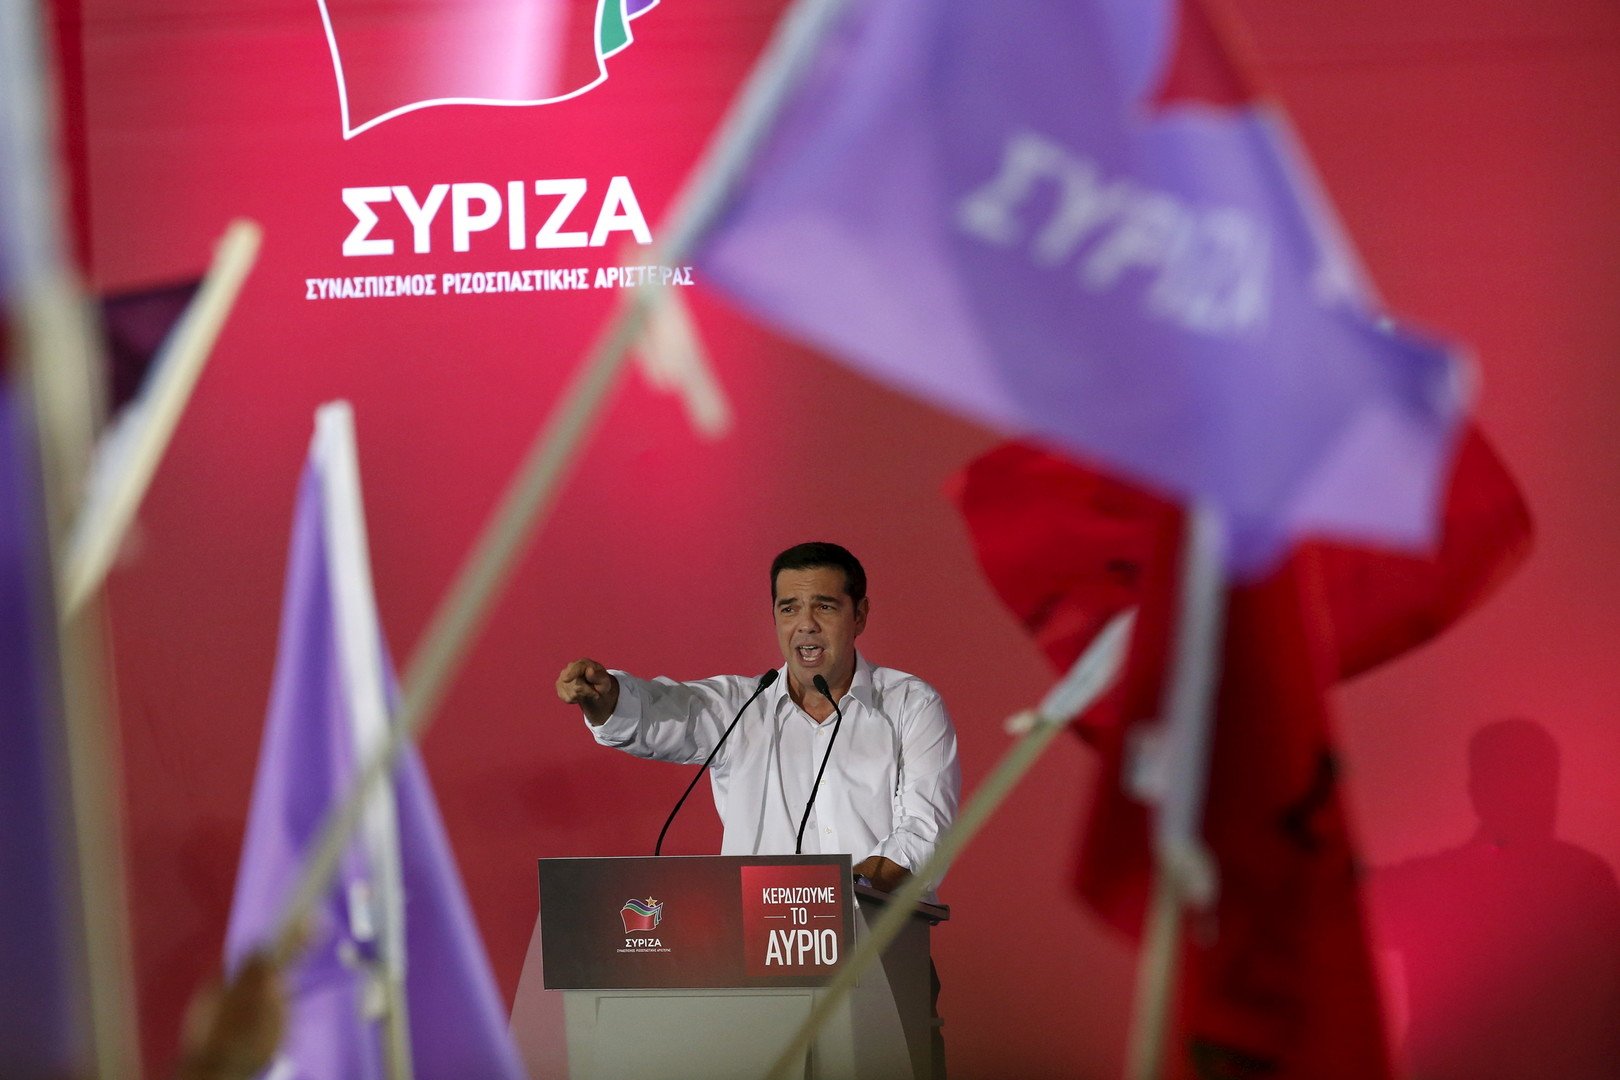 الانتخابات اليونانية بين التقشف واللاجئين